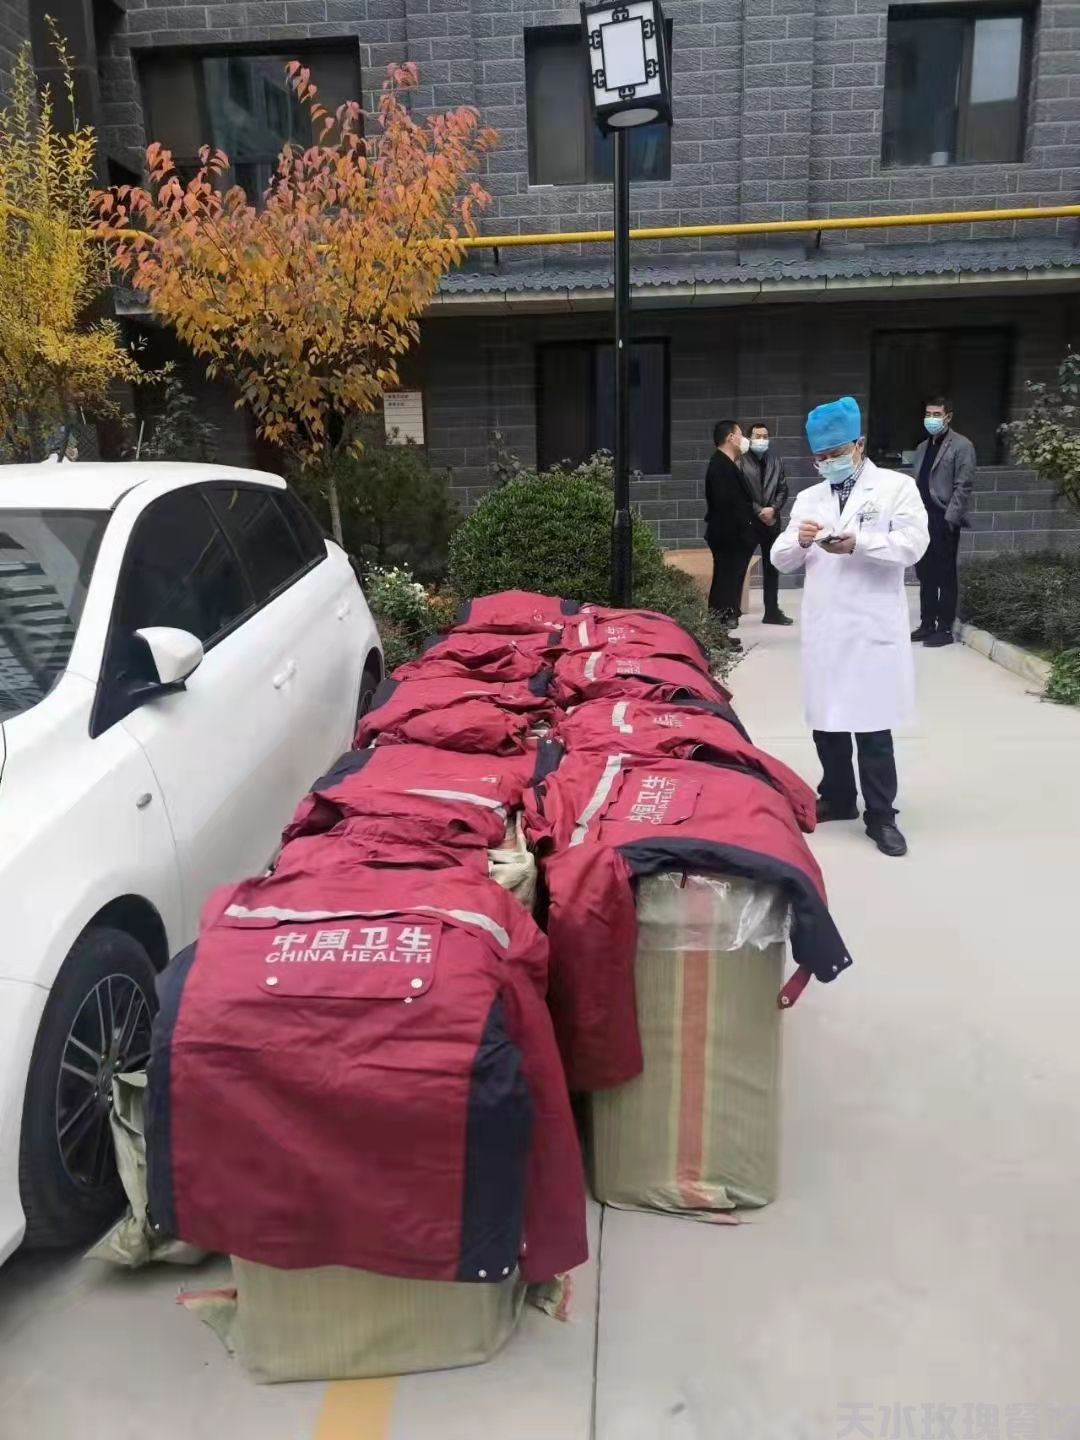 天水玫瑰餐饮有限公司向天水市中医医院捐赠价值5万元冲锋衣(图2)